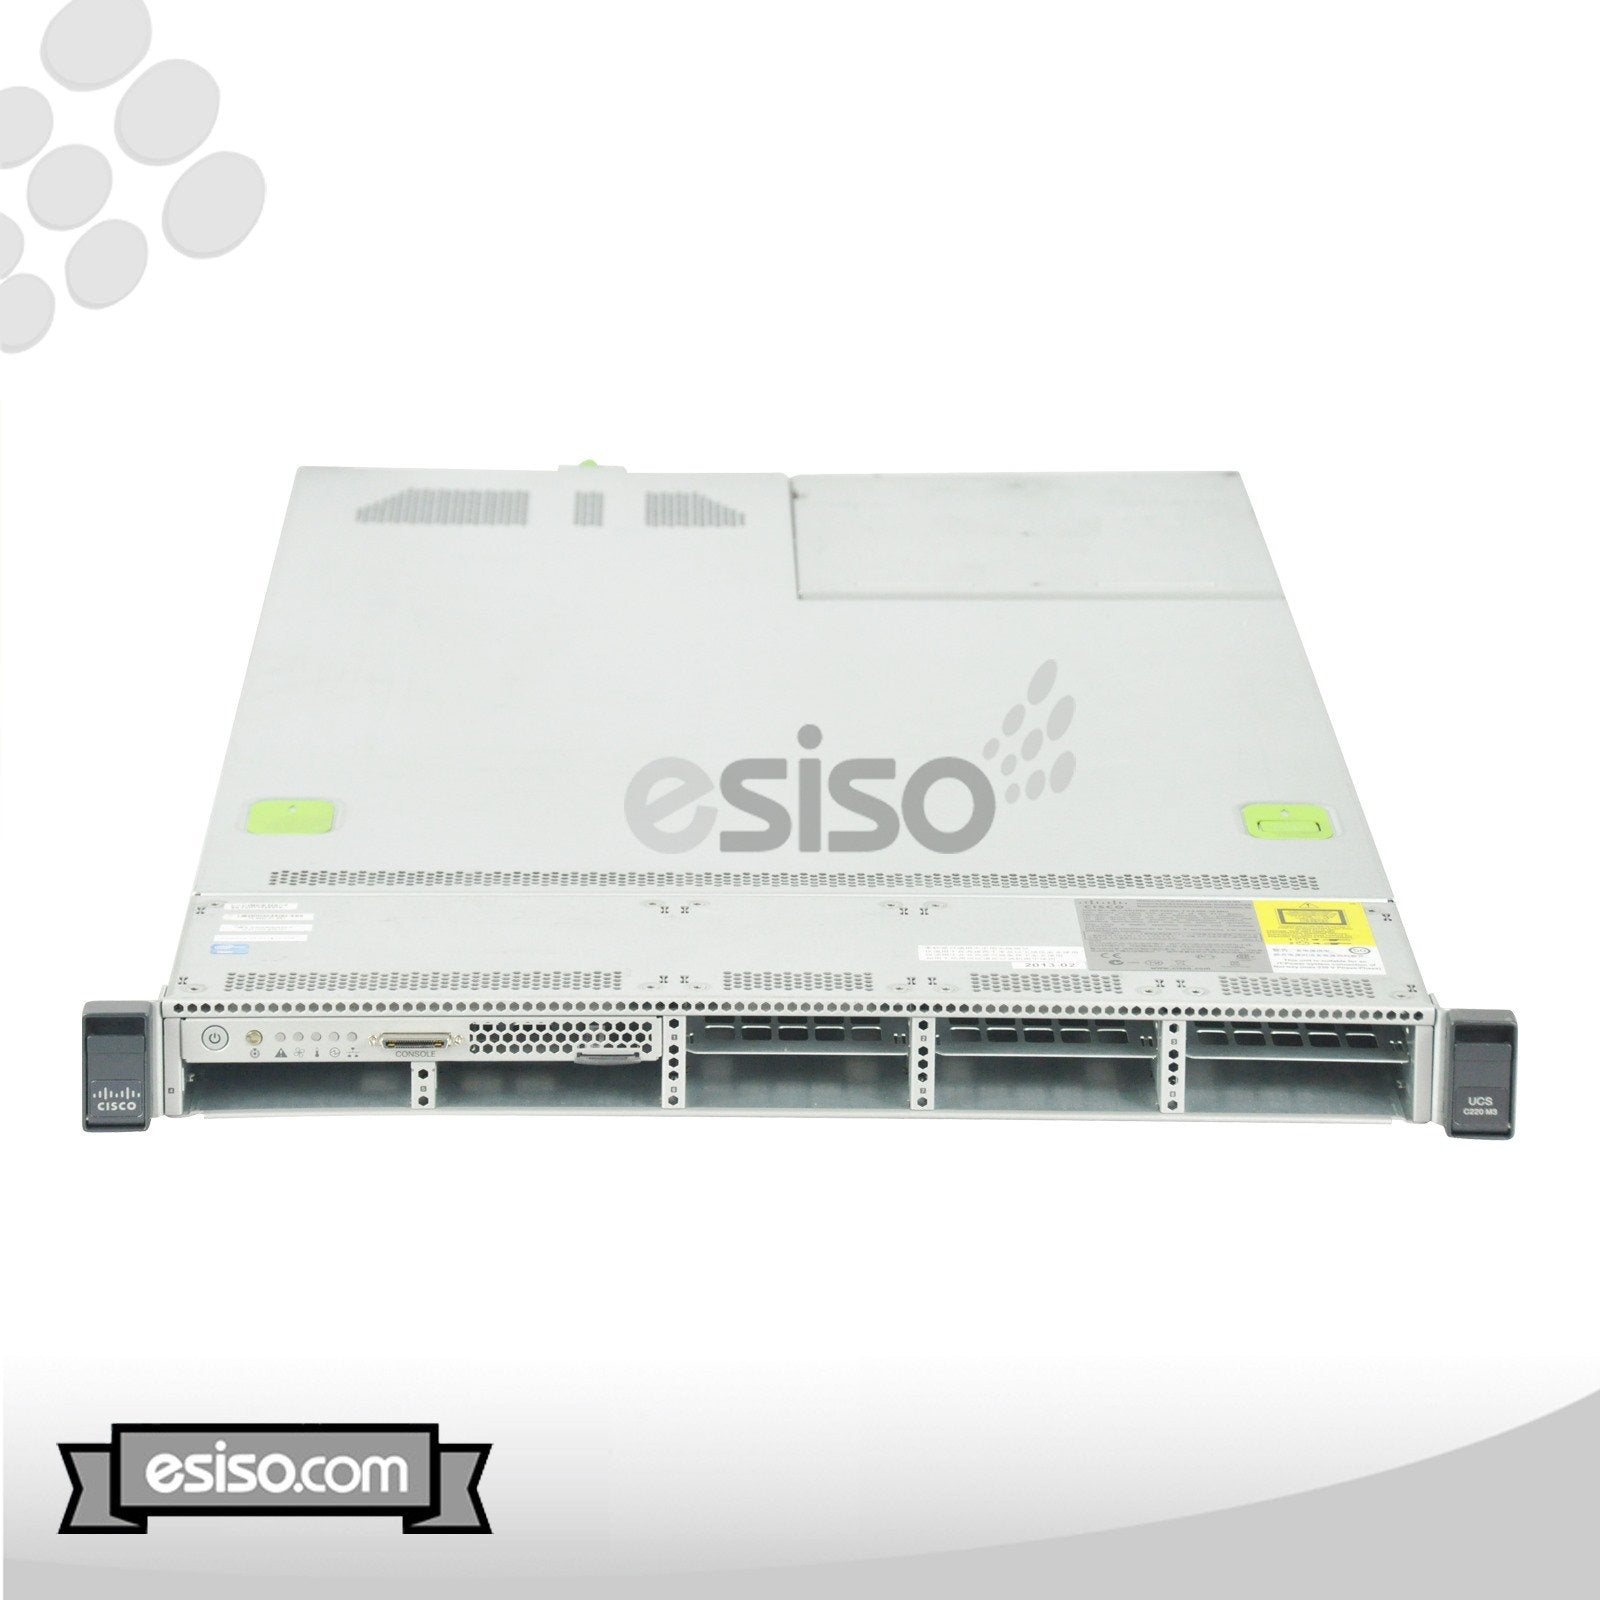 CISCO UCS C220 M3 SFF SERVER 2x 10 CORE E5-2680V2 2.8GHz 32GB RAM 4x TRAYS